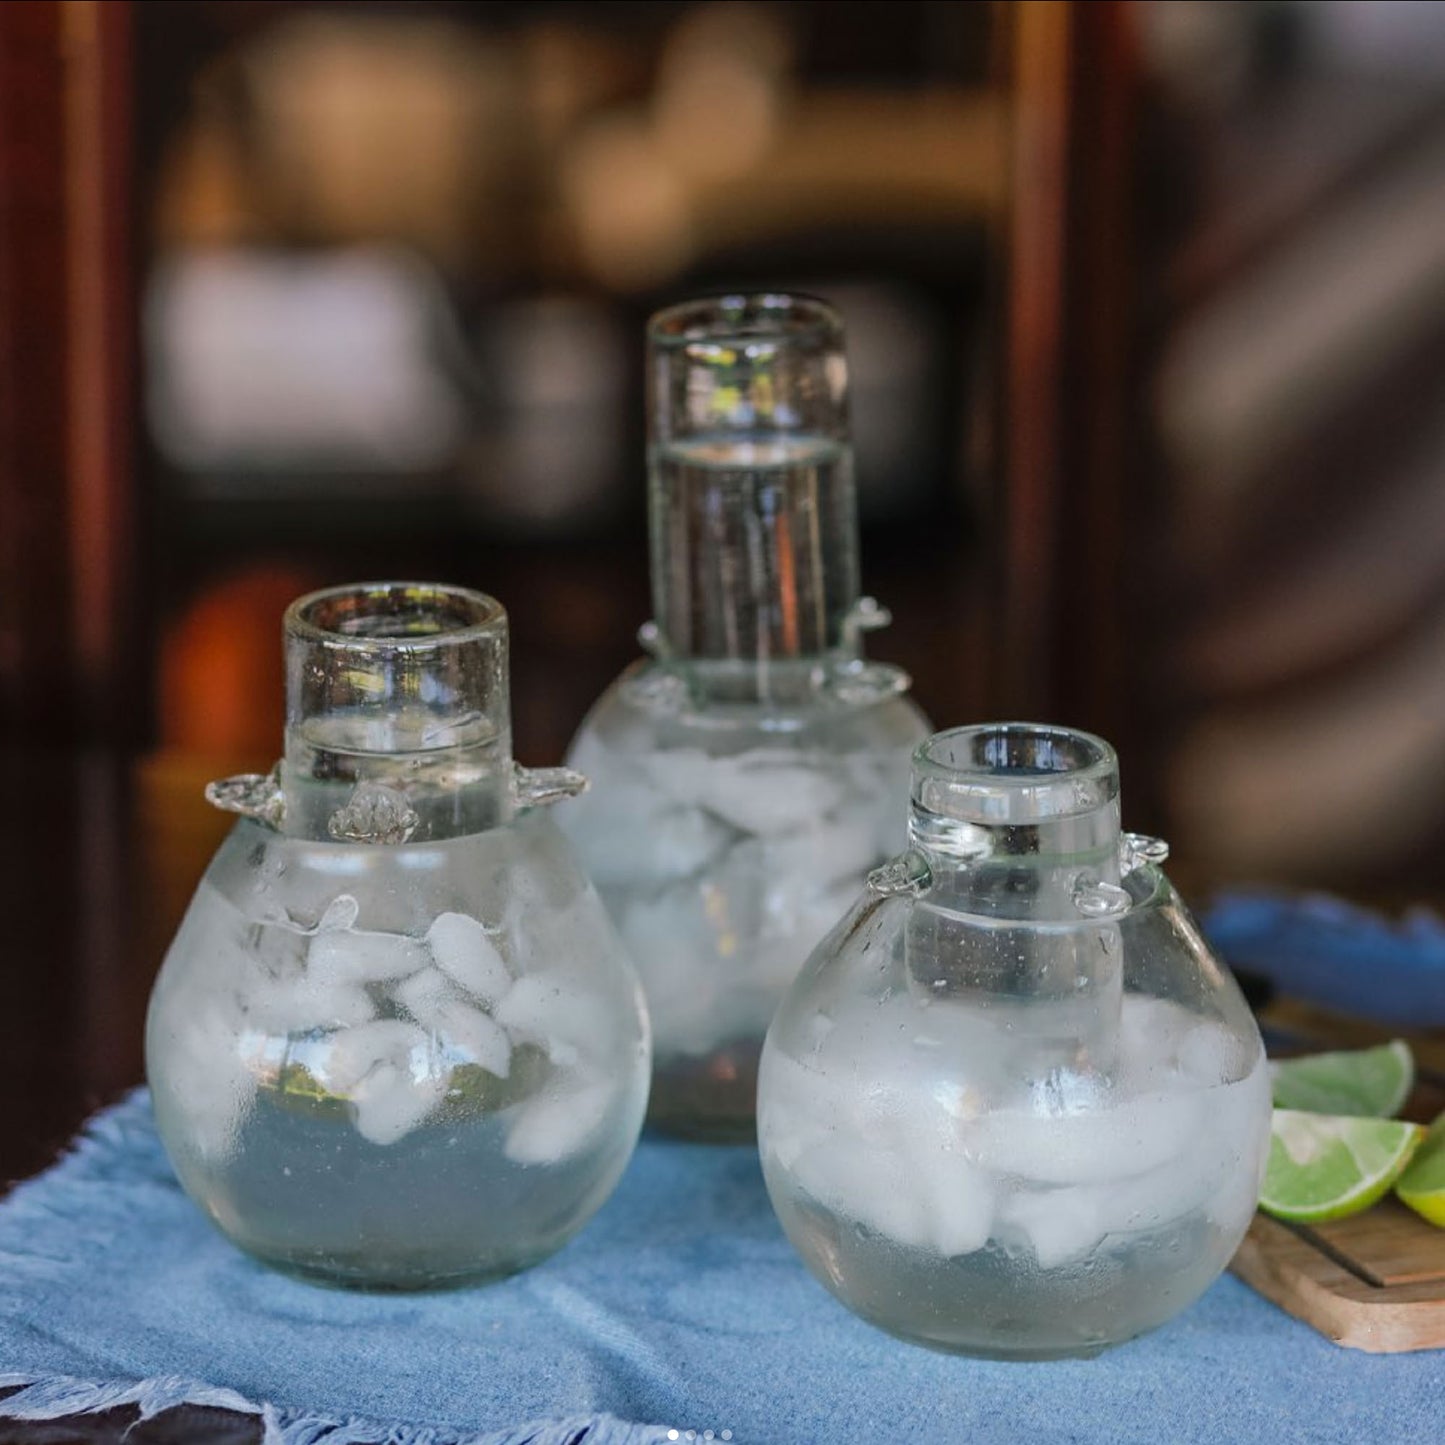 Vaso de chupito de tequila soplado a mano y enfriador | Kit Vaso Tequilero - Hecho a mano en Guatemala con vidrio reciclado *Este listado es para un kit*